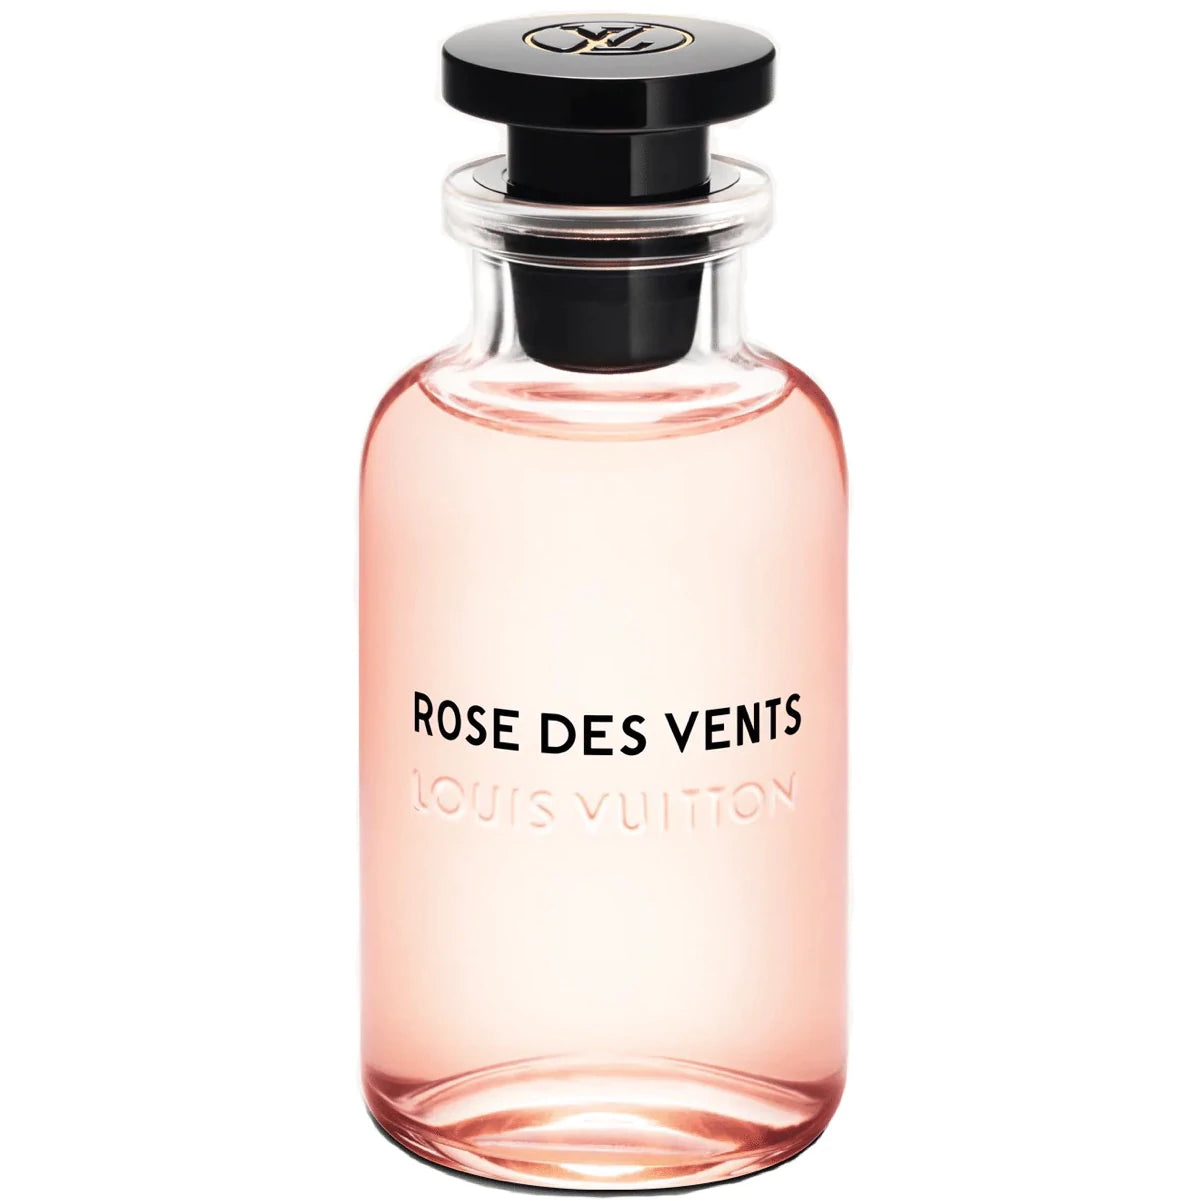 Famous Brand Les Sables Roses Perfume For Women Eau De Parfum